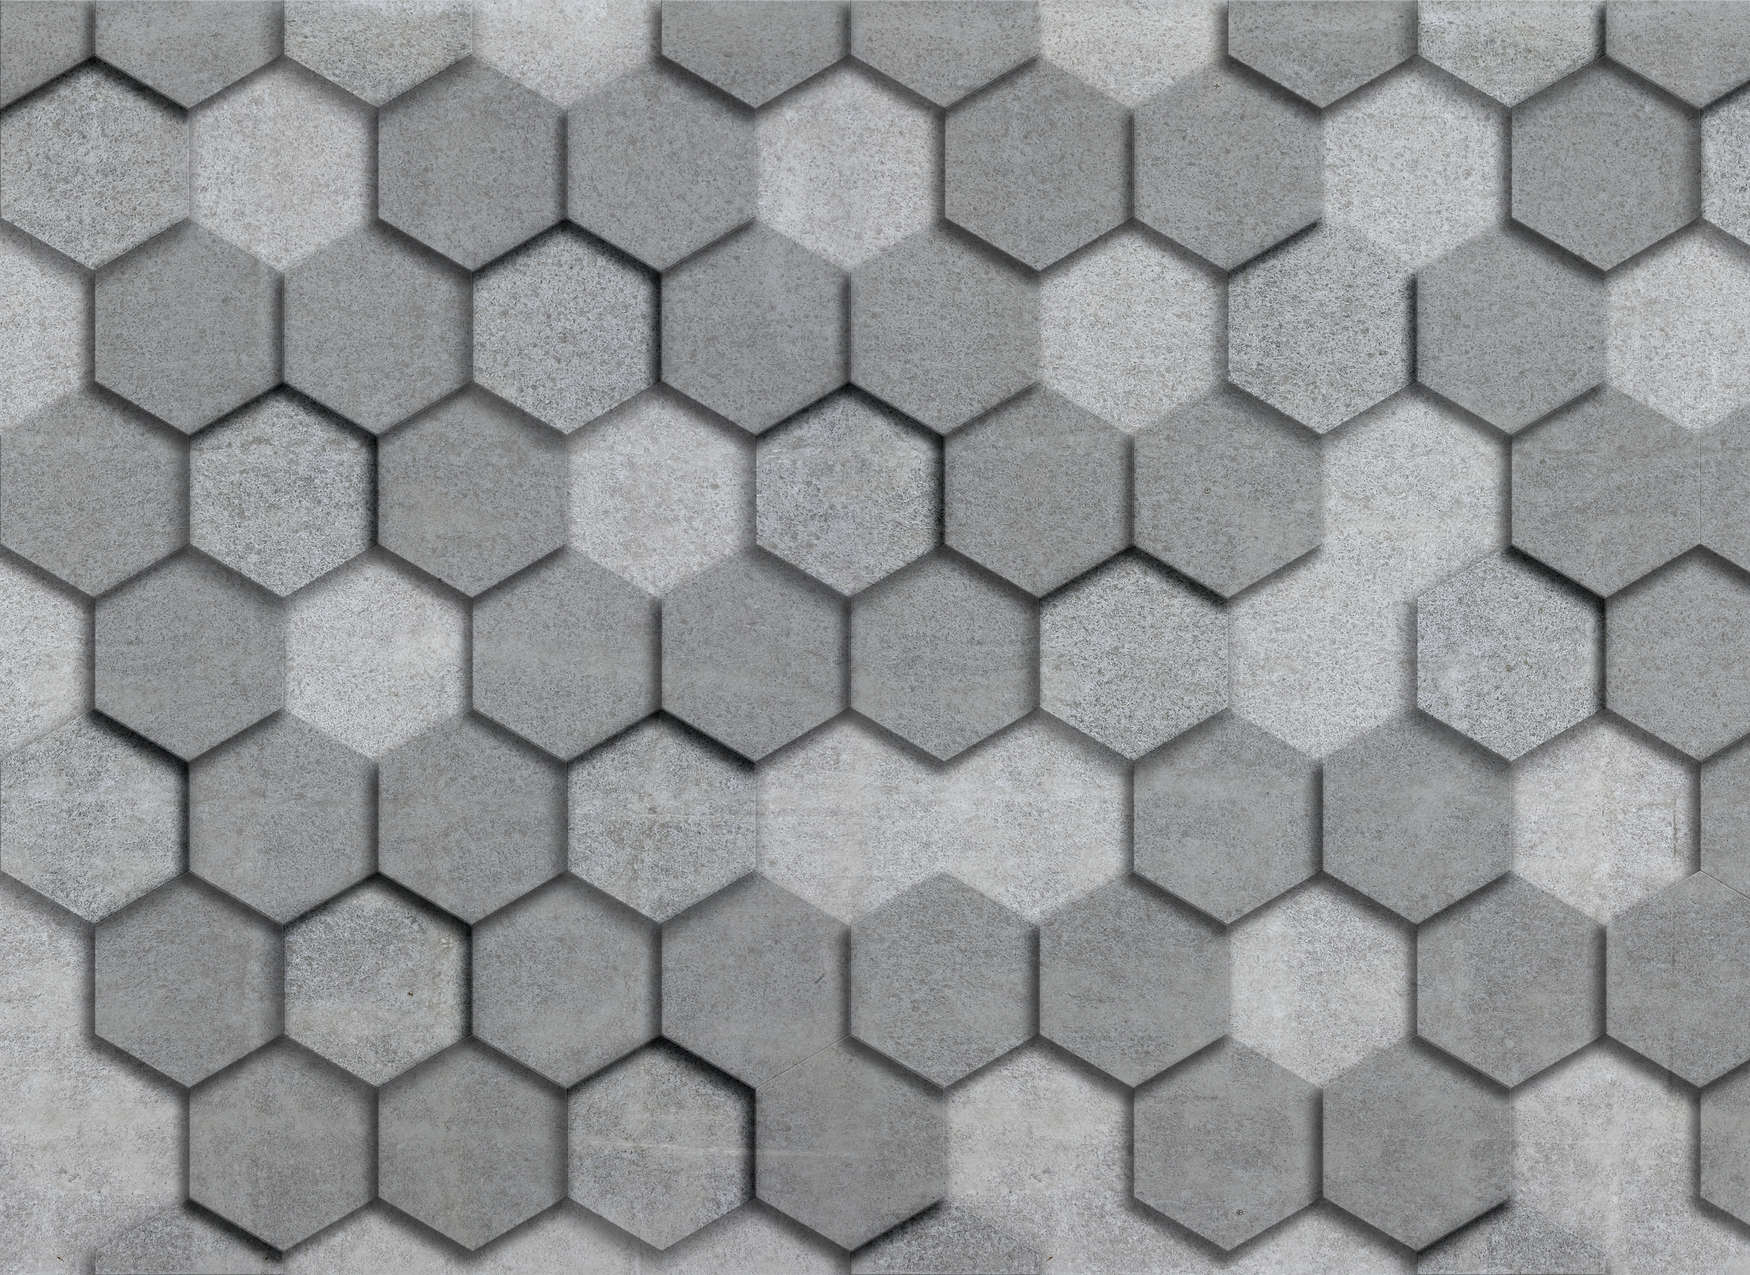             Fototapete mit geometrischen Kacheln sechseckig 3D-Optik – Grau, Silber
        